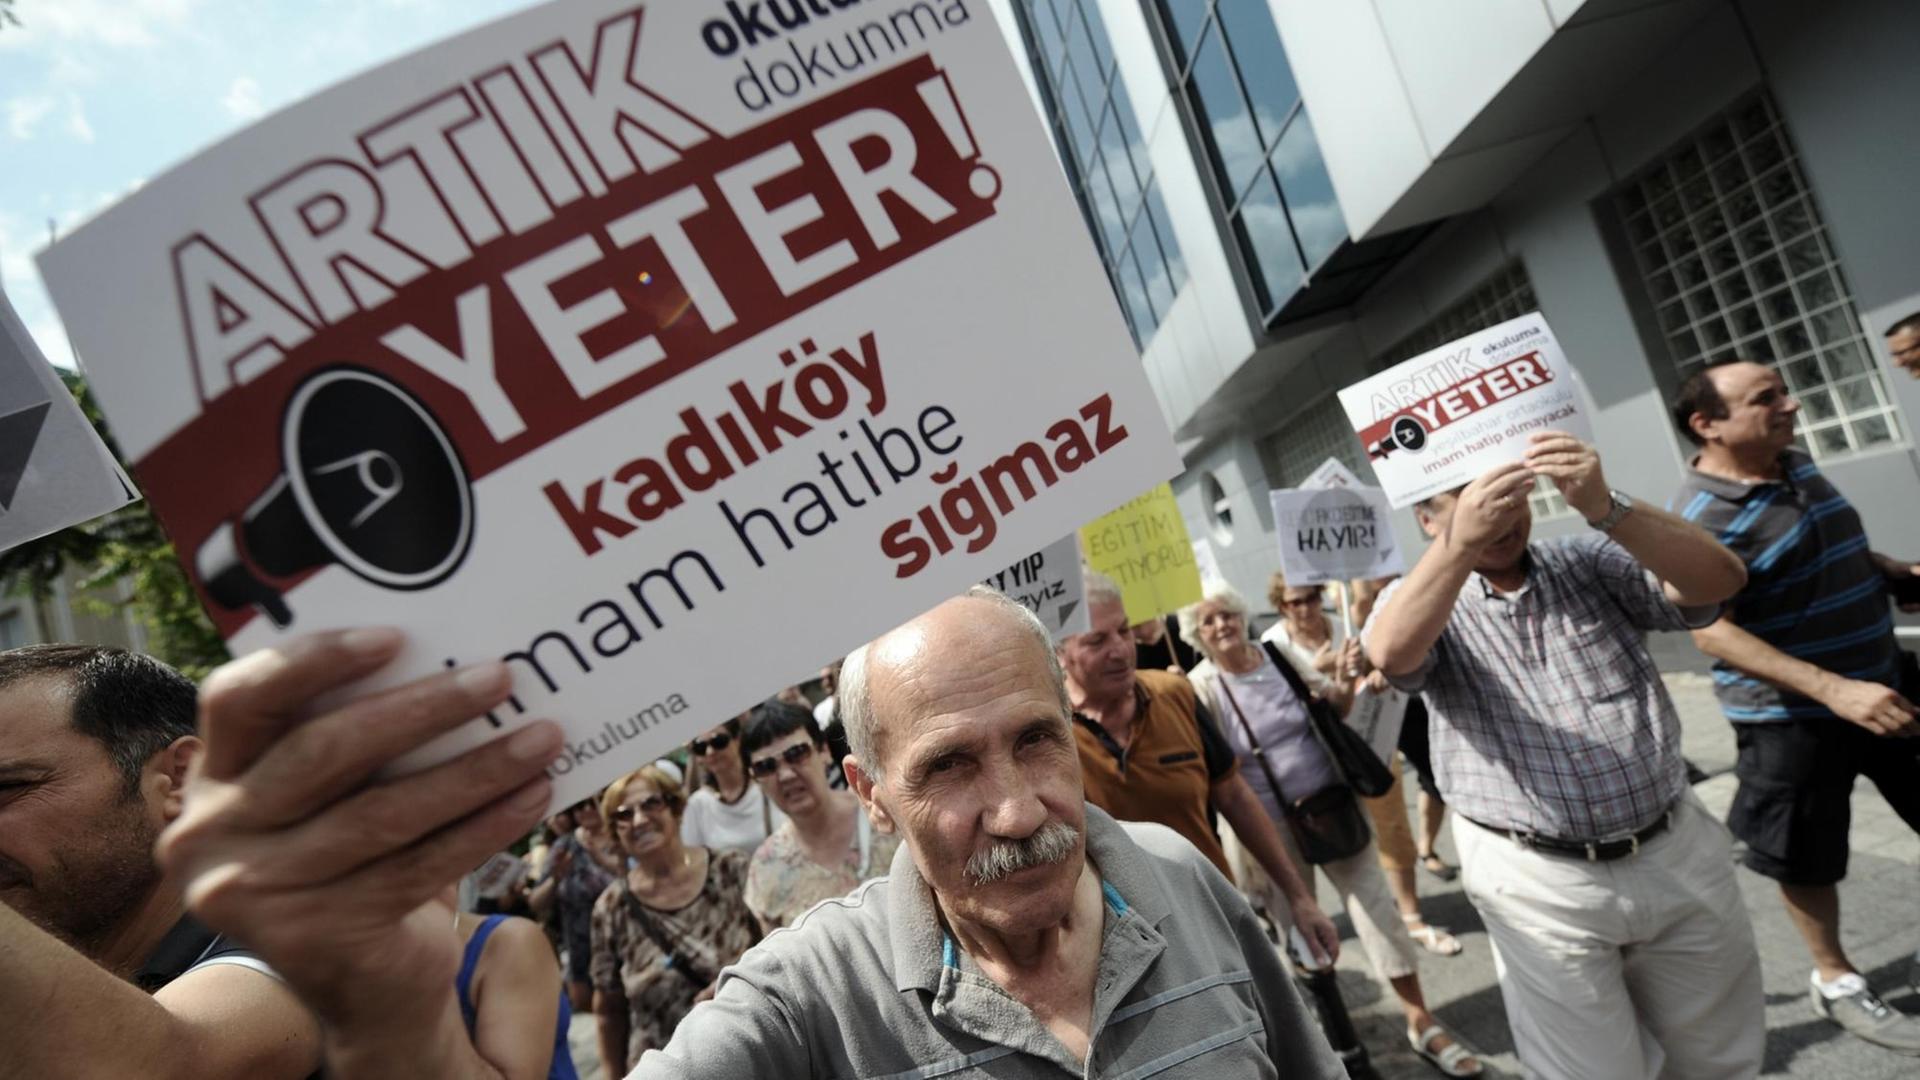 Ein Mann hält ein Protestplakat in die Kamera auf dem auf Türkisch steht: "Genug! Hört auf, unsere Schulen in Imam Hatips zu verwandeln!", im Hintergrund gehen auf einer Straße weitere Demonstranten.